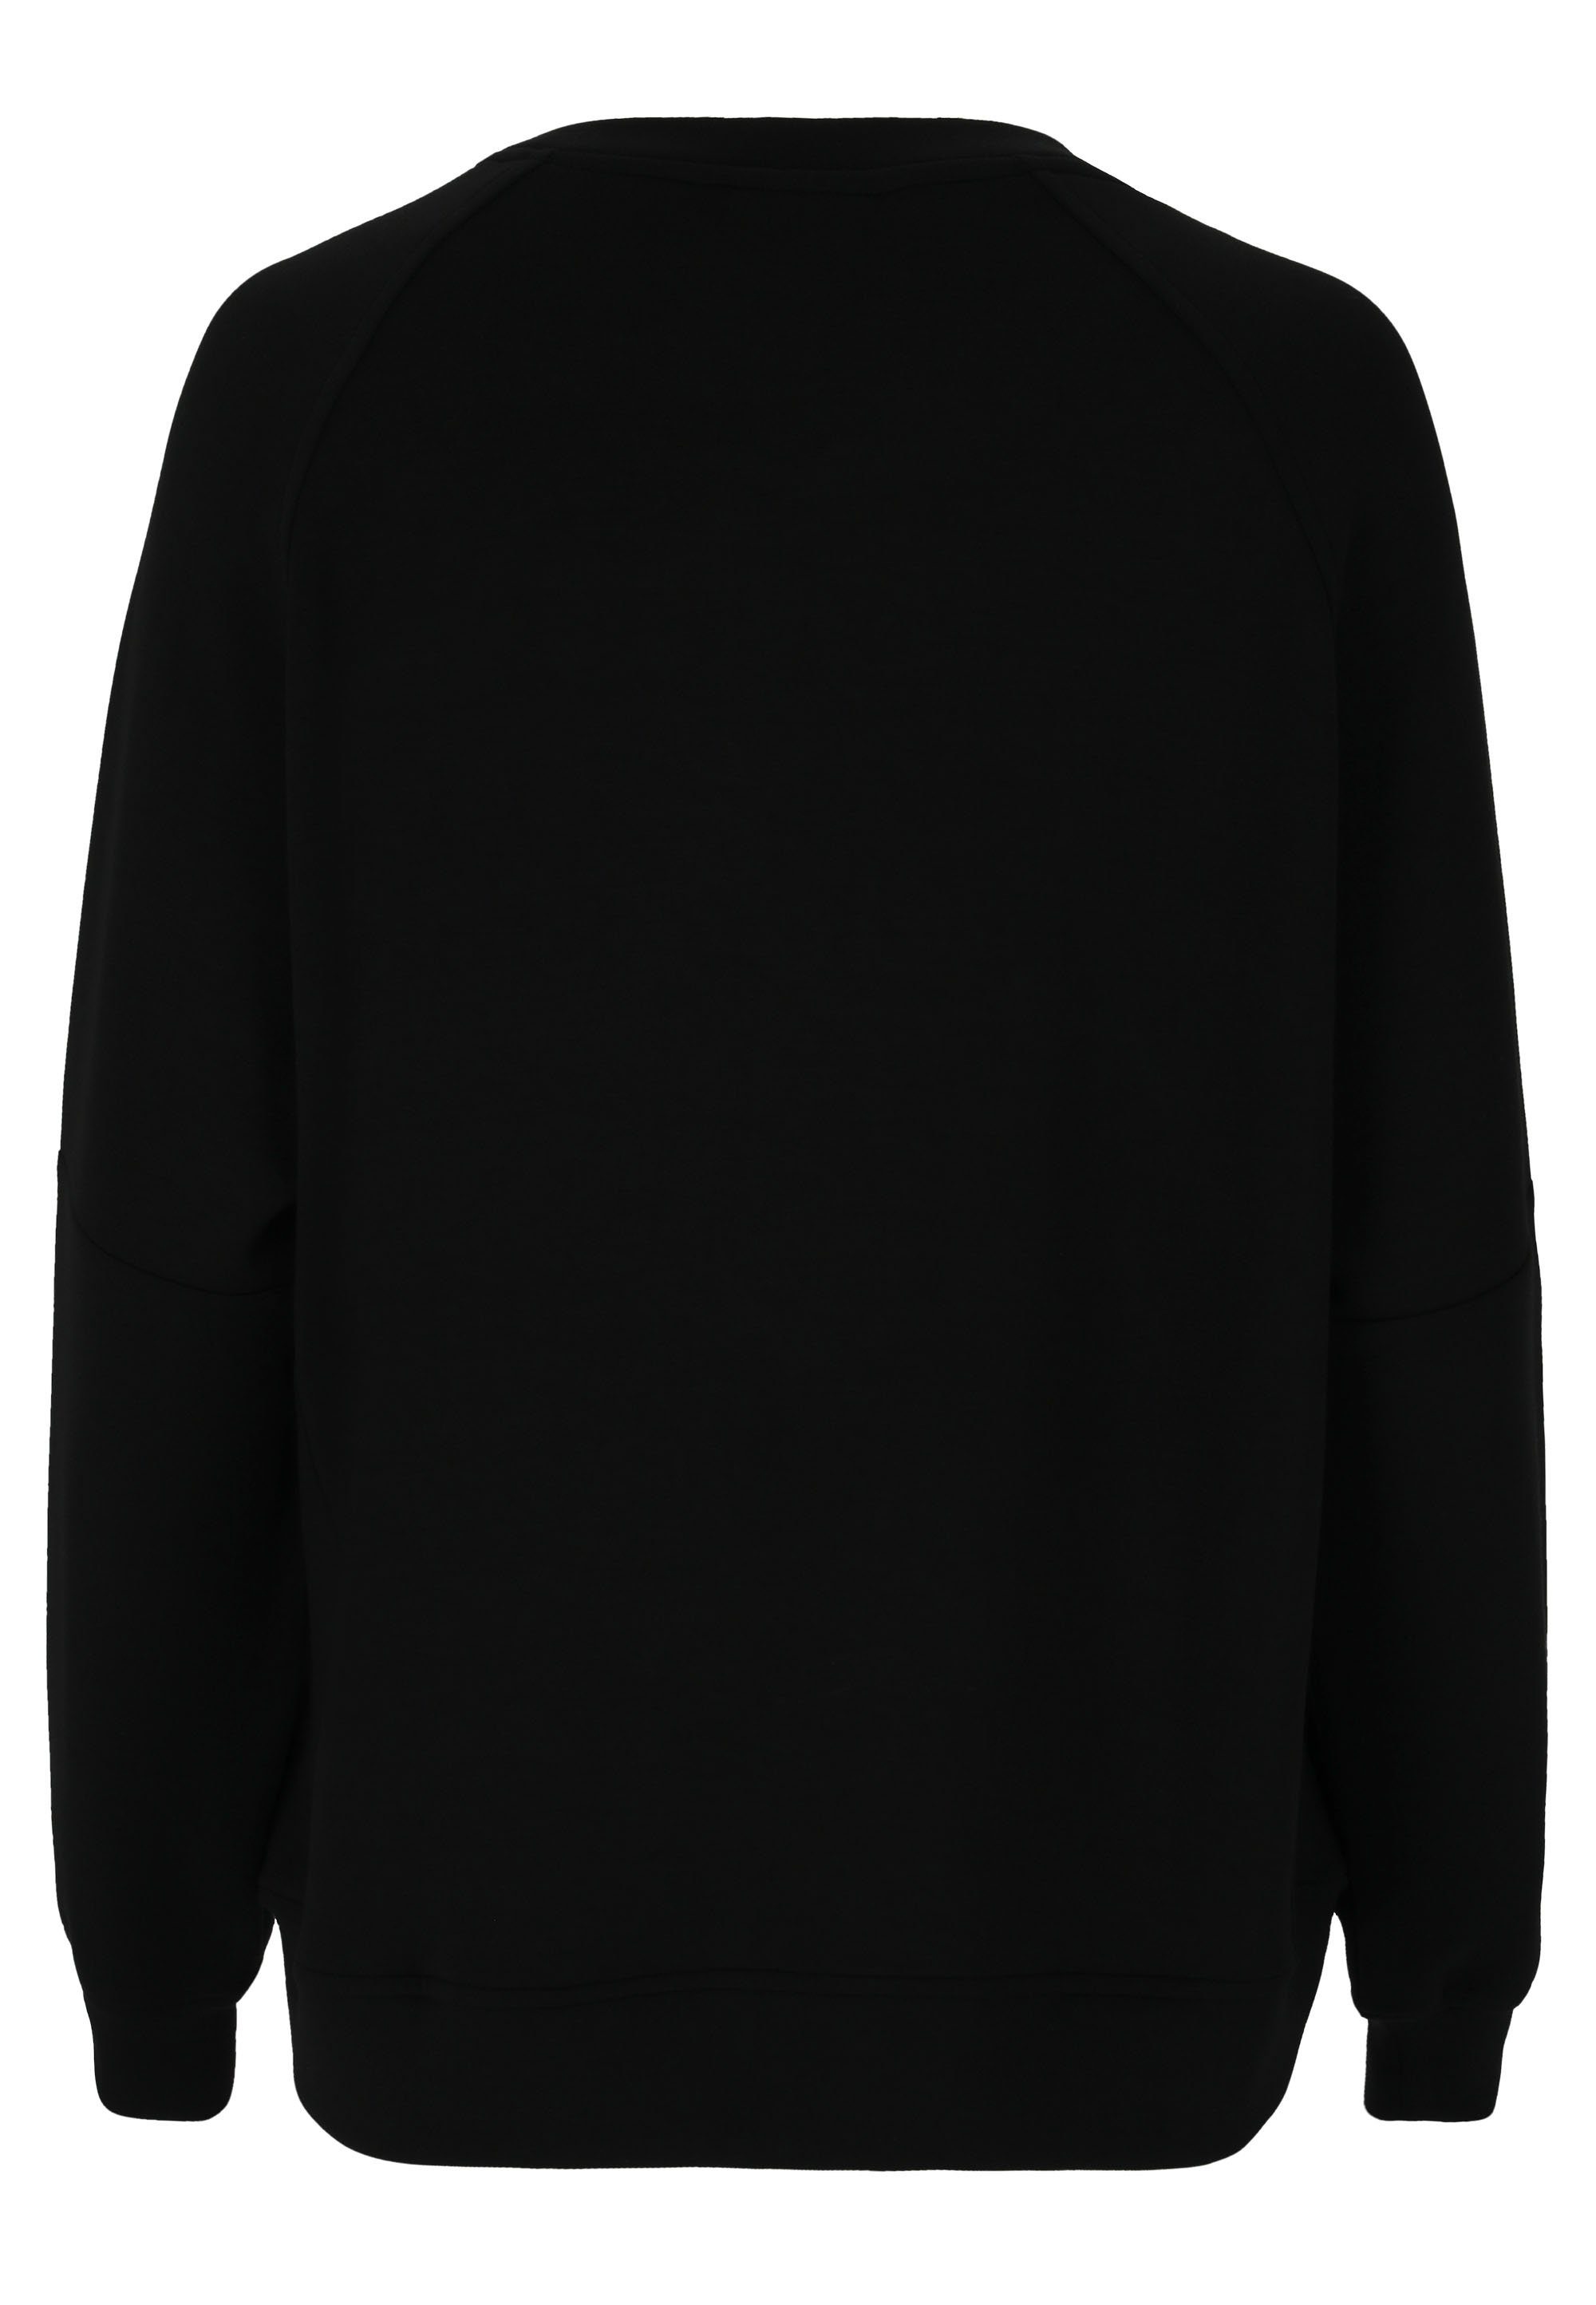 ATHLECIA Sweatshirt Jacey aus weichem extra schwarz Material